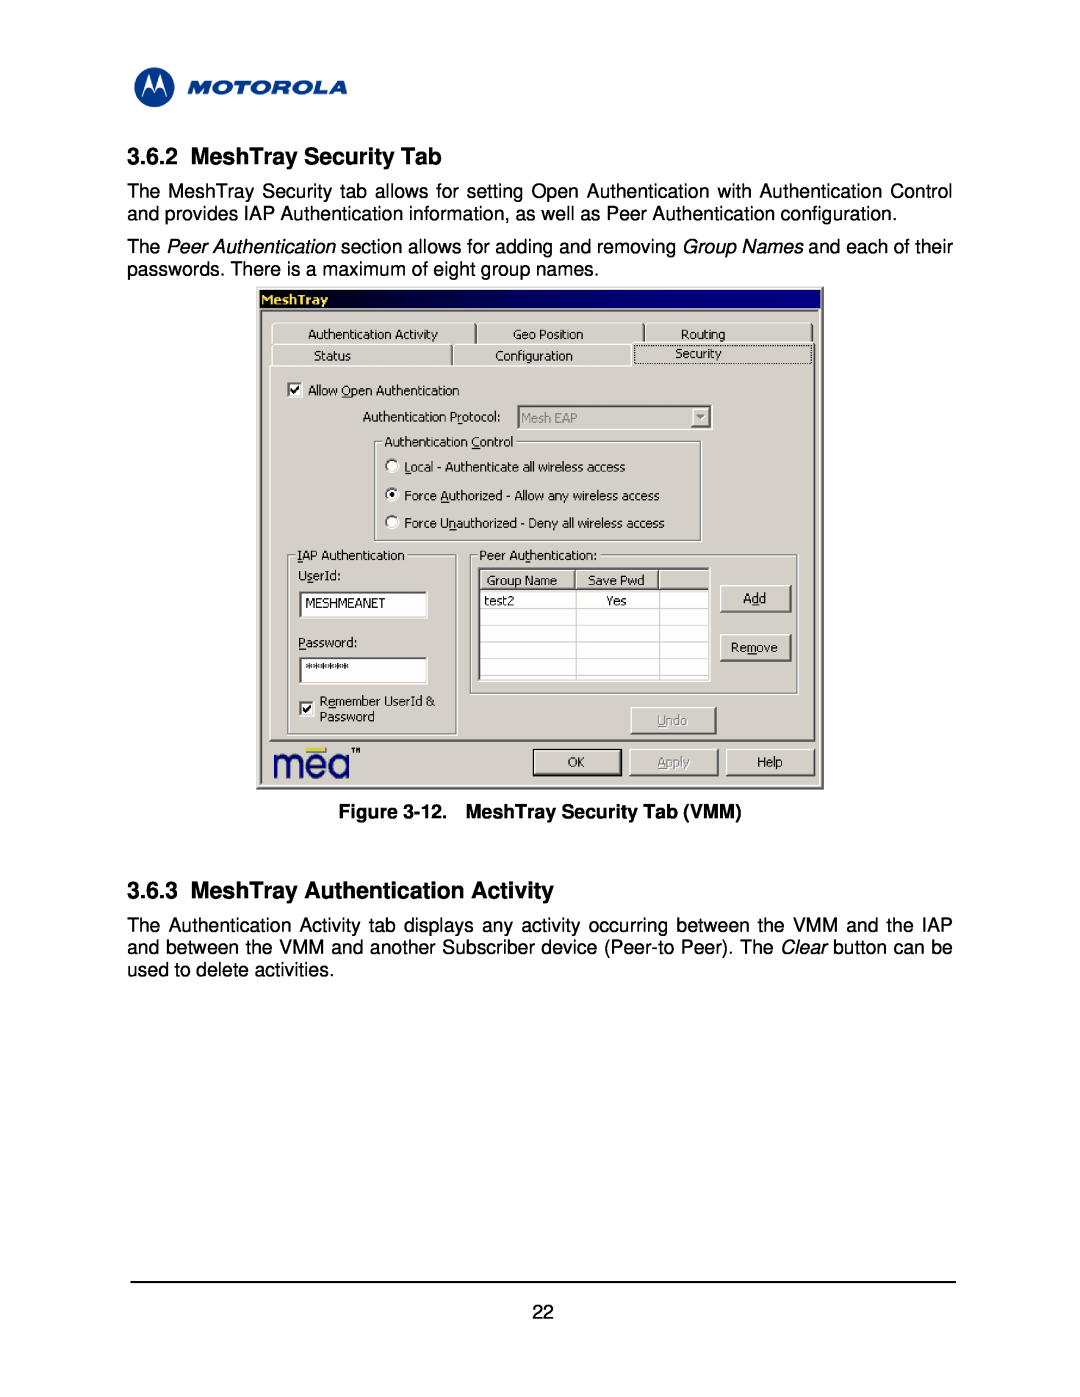 Motorola 3.1 manual MeshTray Authentication Activity, 12. MeshTray Security Tab VMM 